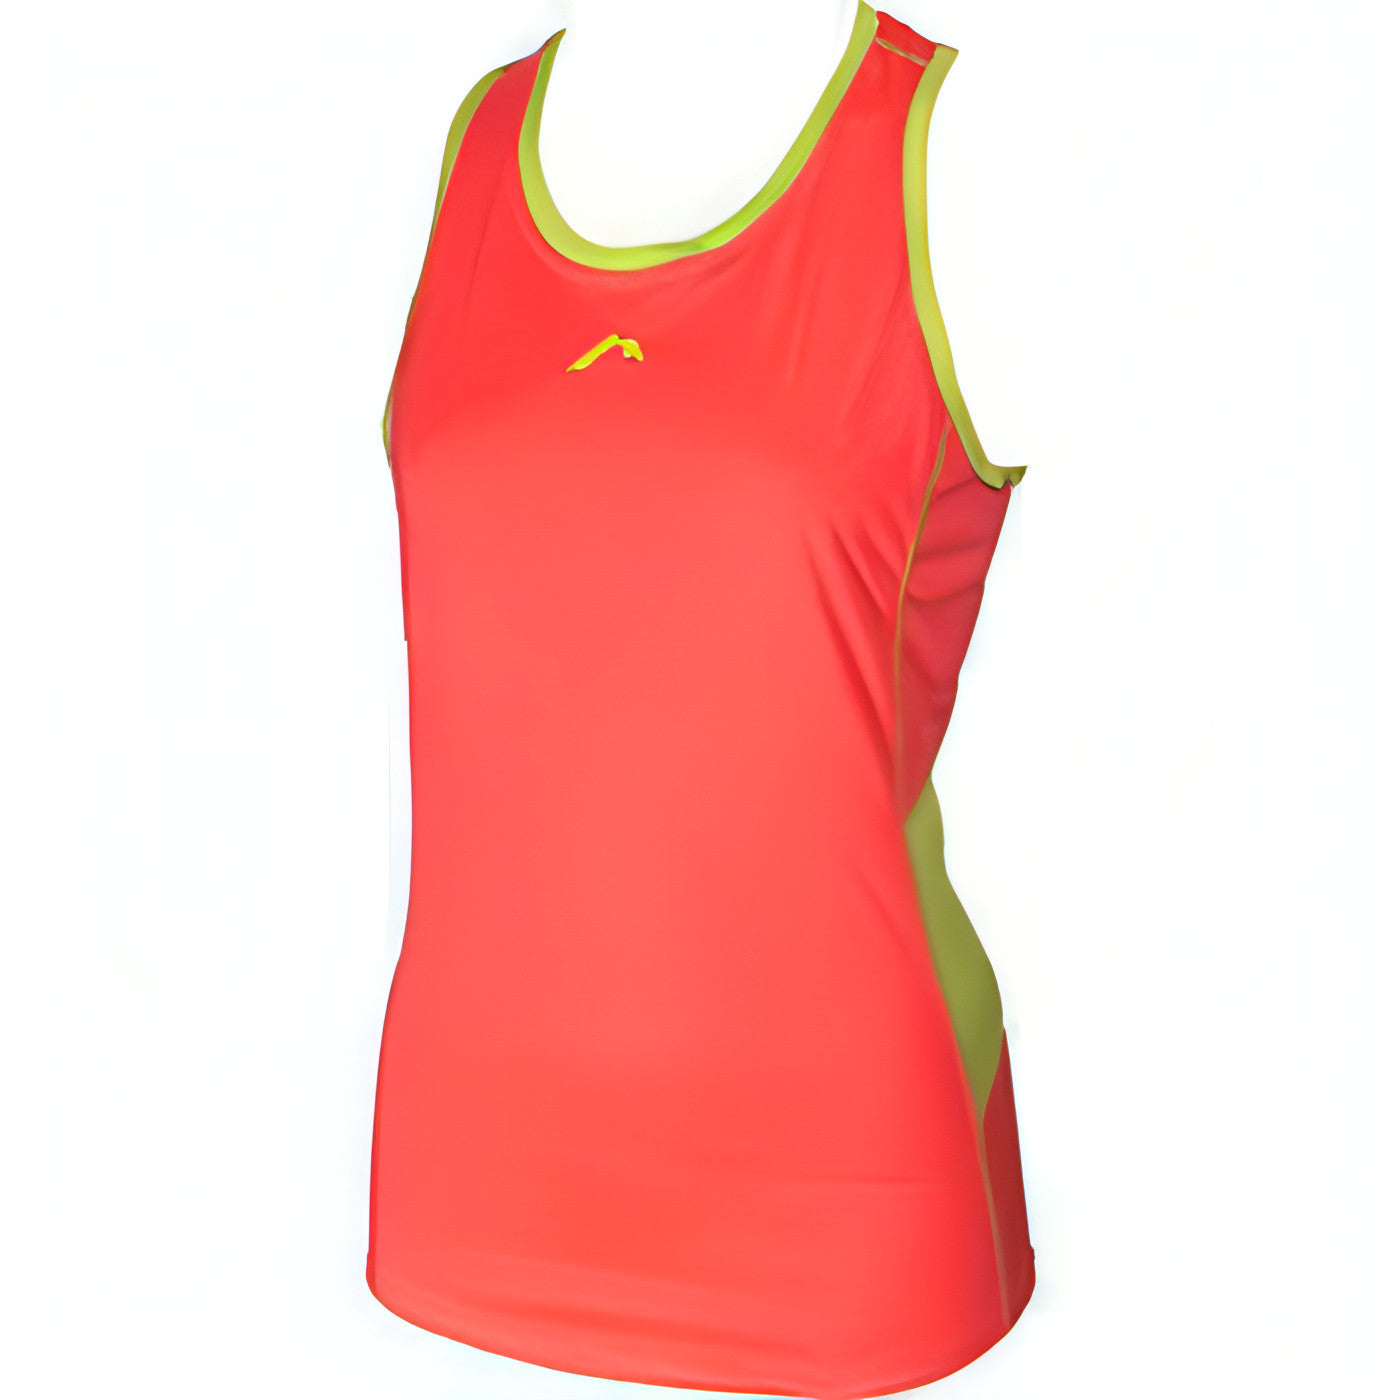 More Mile Racer Back Womens Running Vest - Pink 5055604325672 - Start Fitness